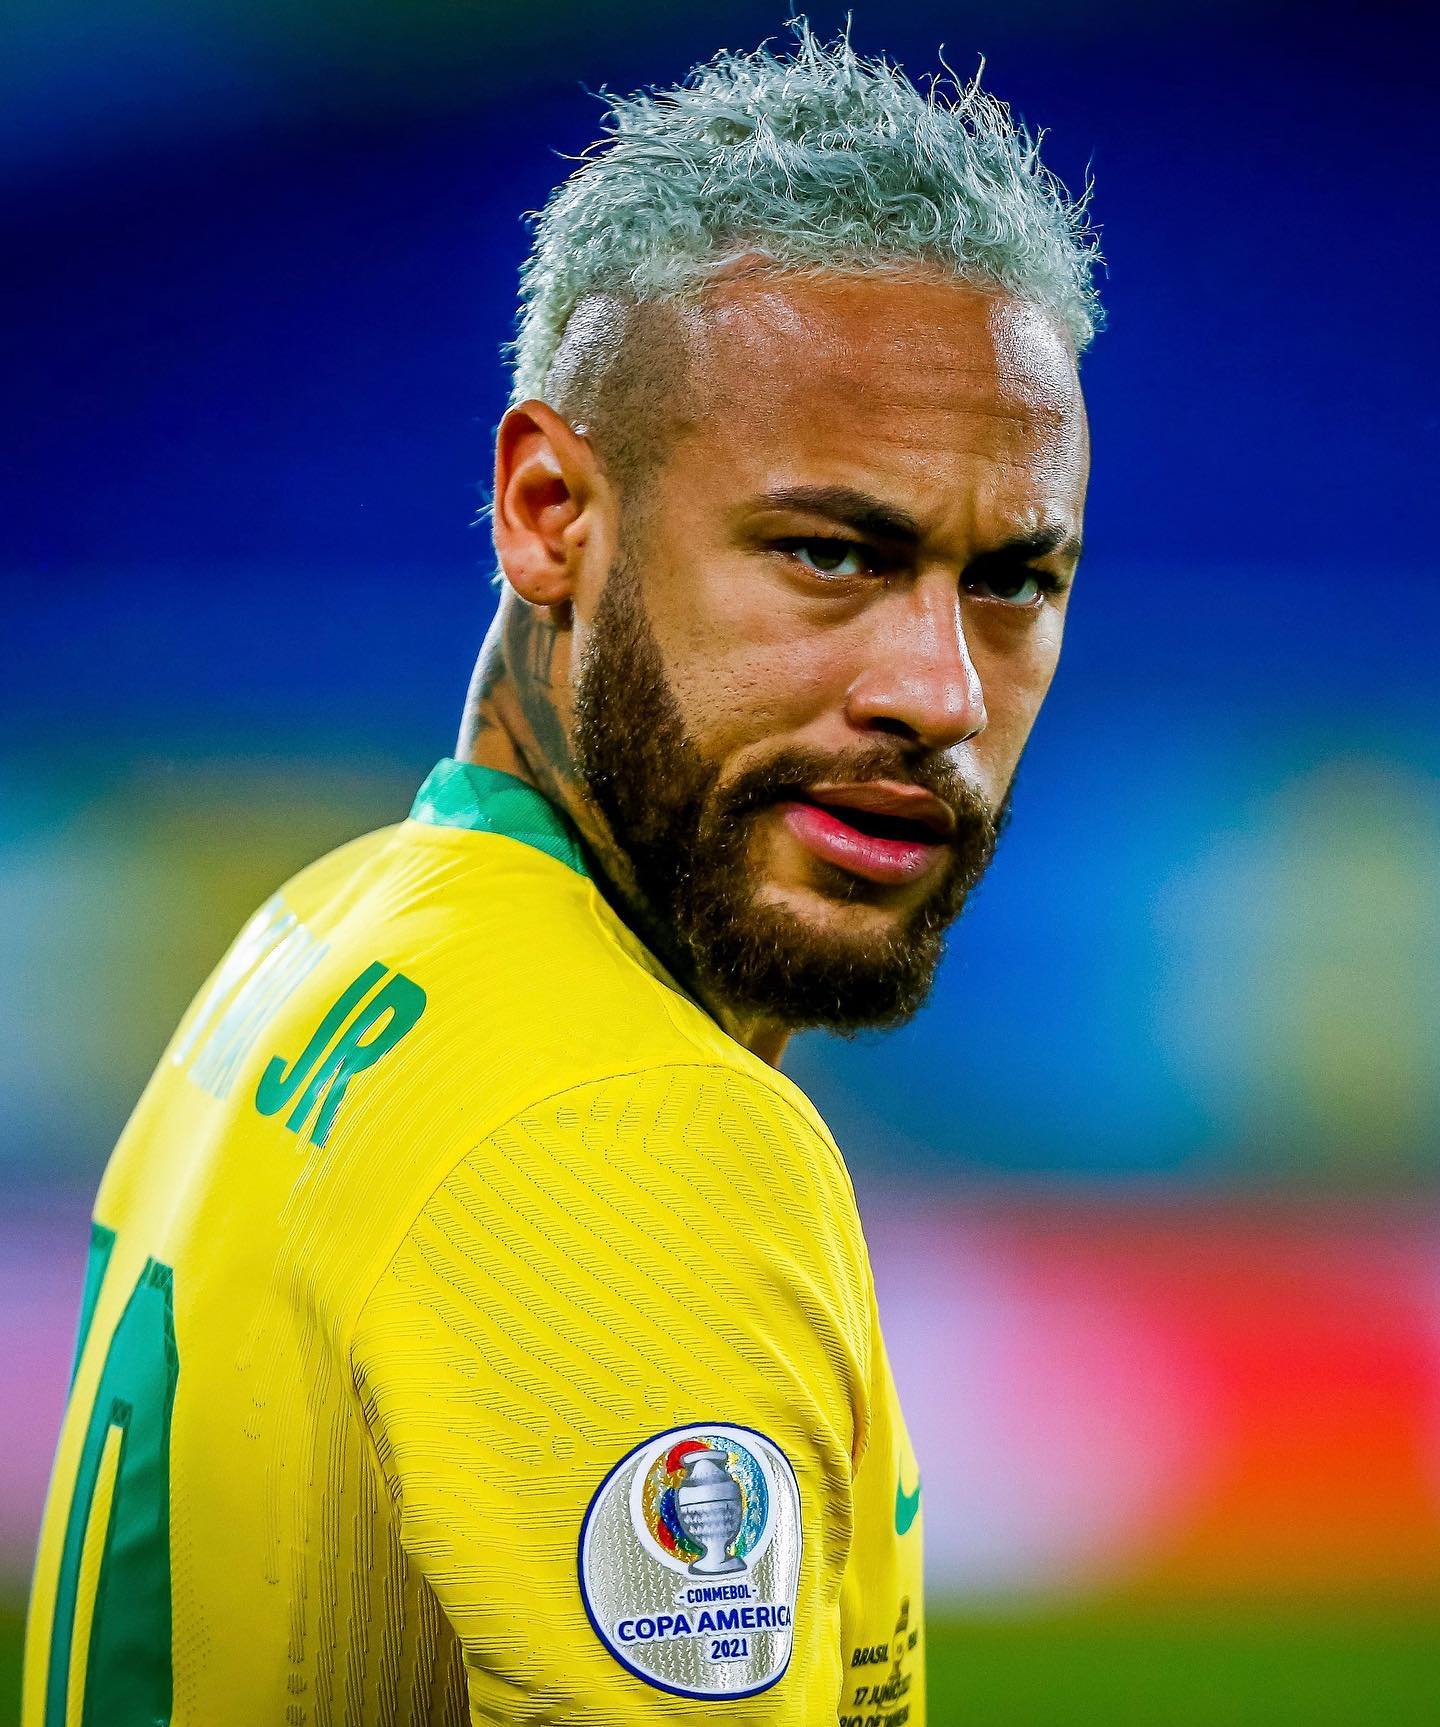 Vídeo : Entenda o Caso que o Neymar e sua família receberam 40 milhões de Euros escondidos para fraudar a DIS